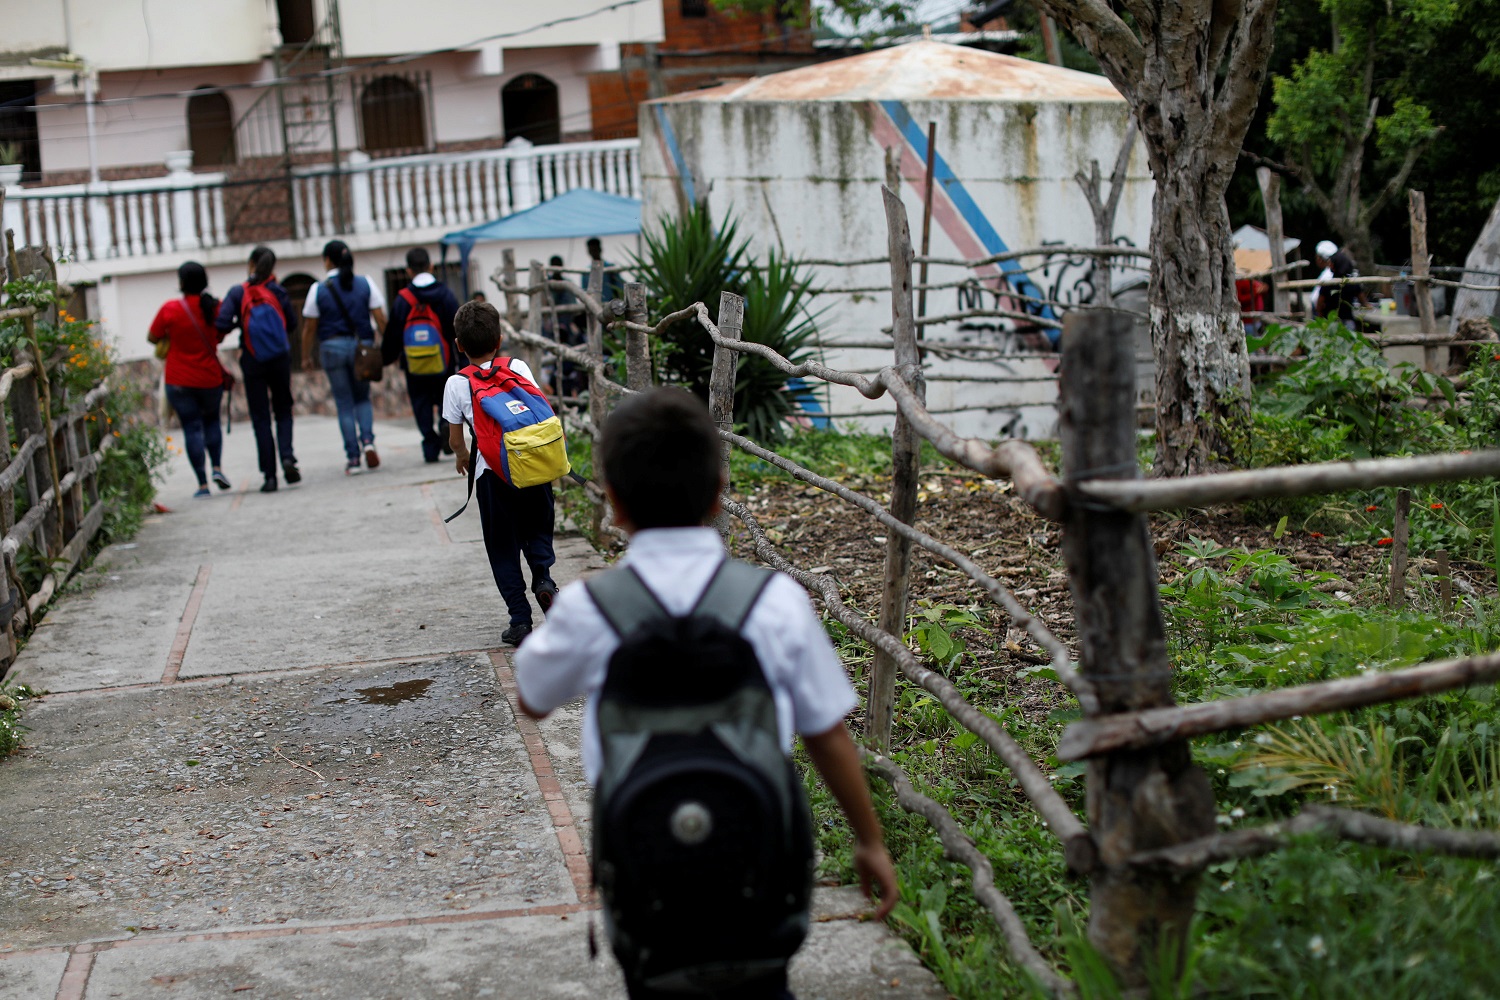 Los niños llegan a un comedor dirigido por partidarios de la oposición en el barrio de La Vega en Caracas, Venezuela, el 23 de mayo de 2017. Foto tomada el 23 de mayo de 2017. REUTERS / Carlos Garcia Rawlins